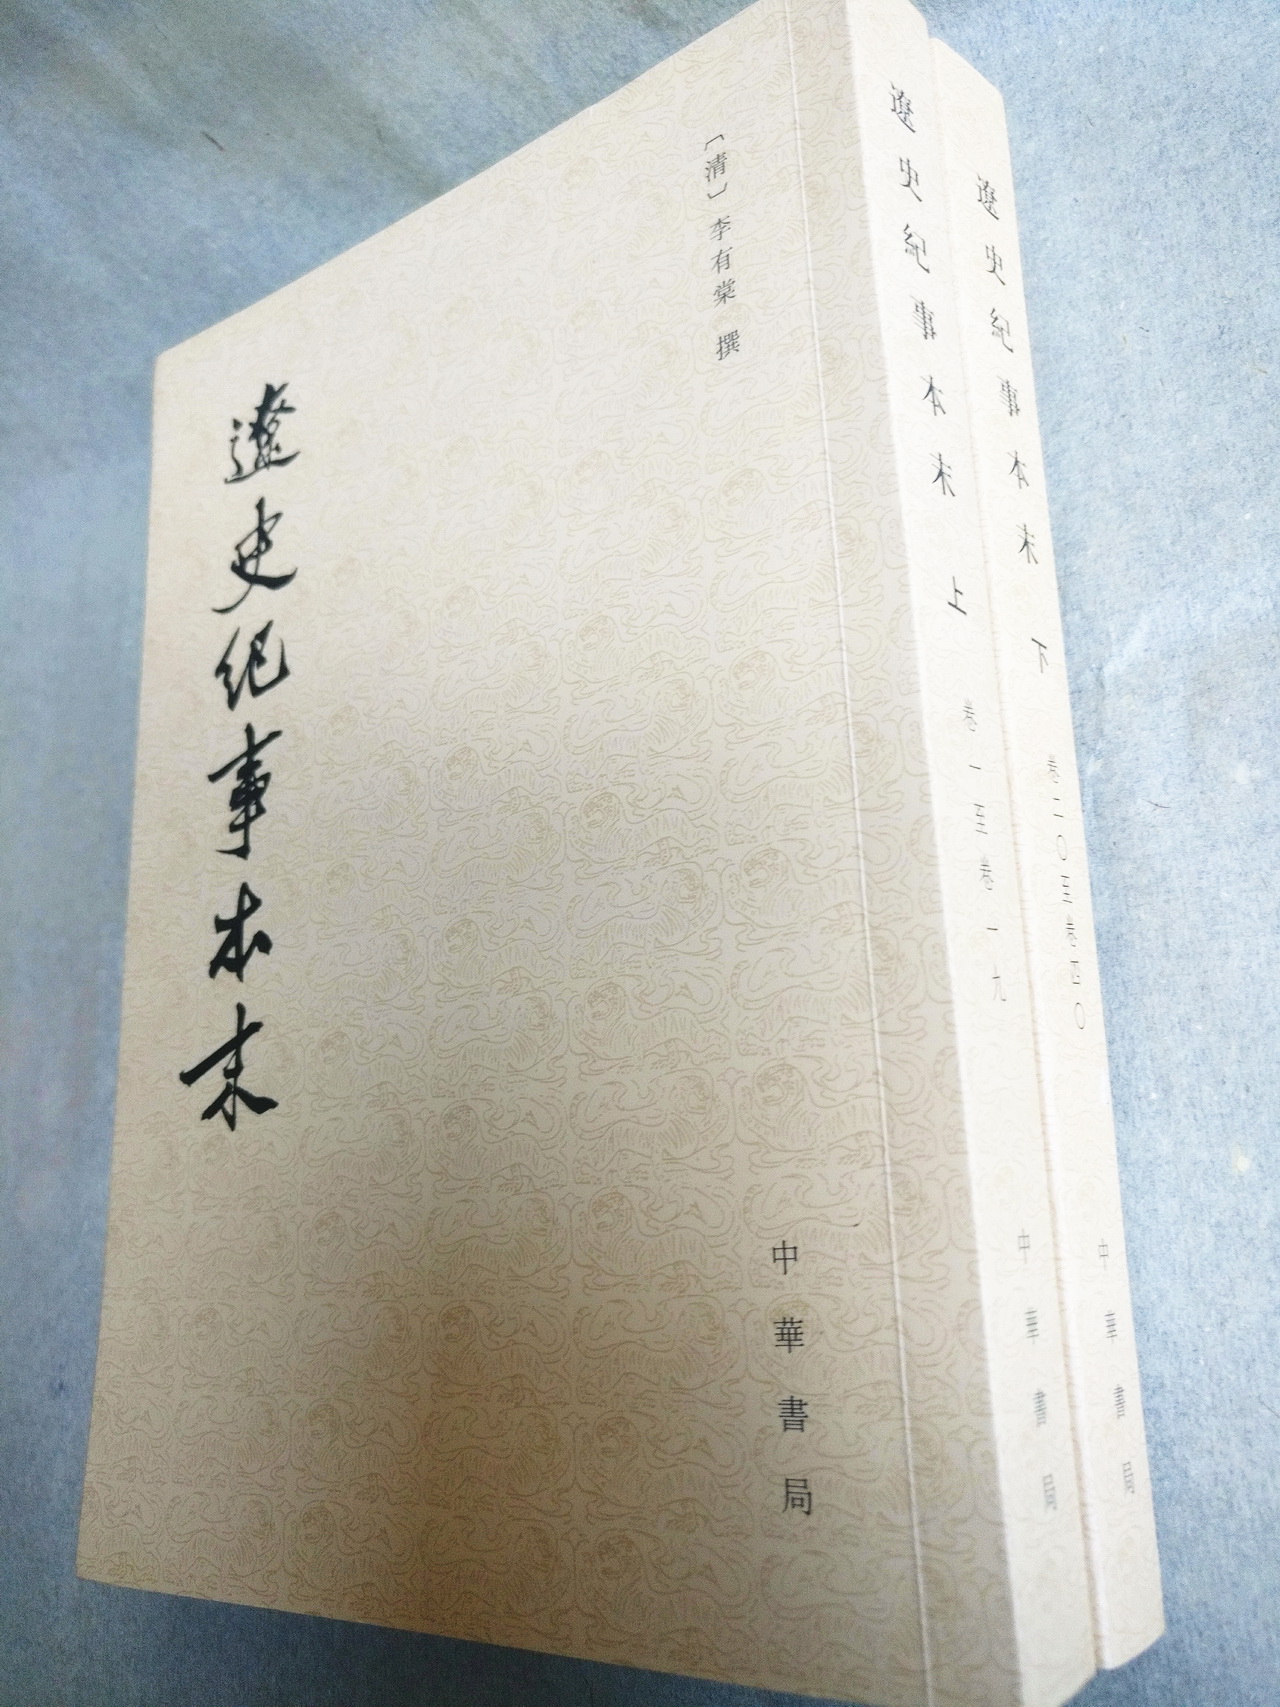 2015年由中華書局再版發行